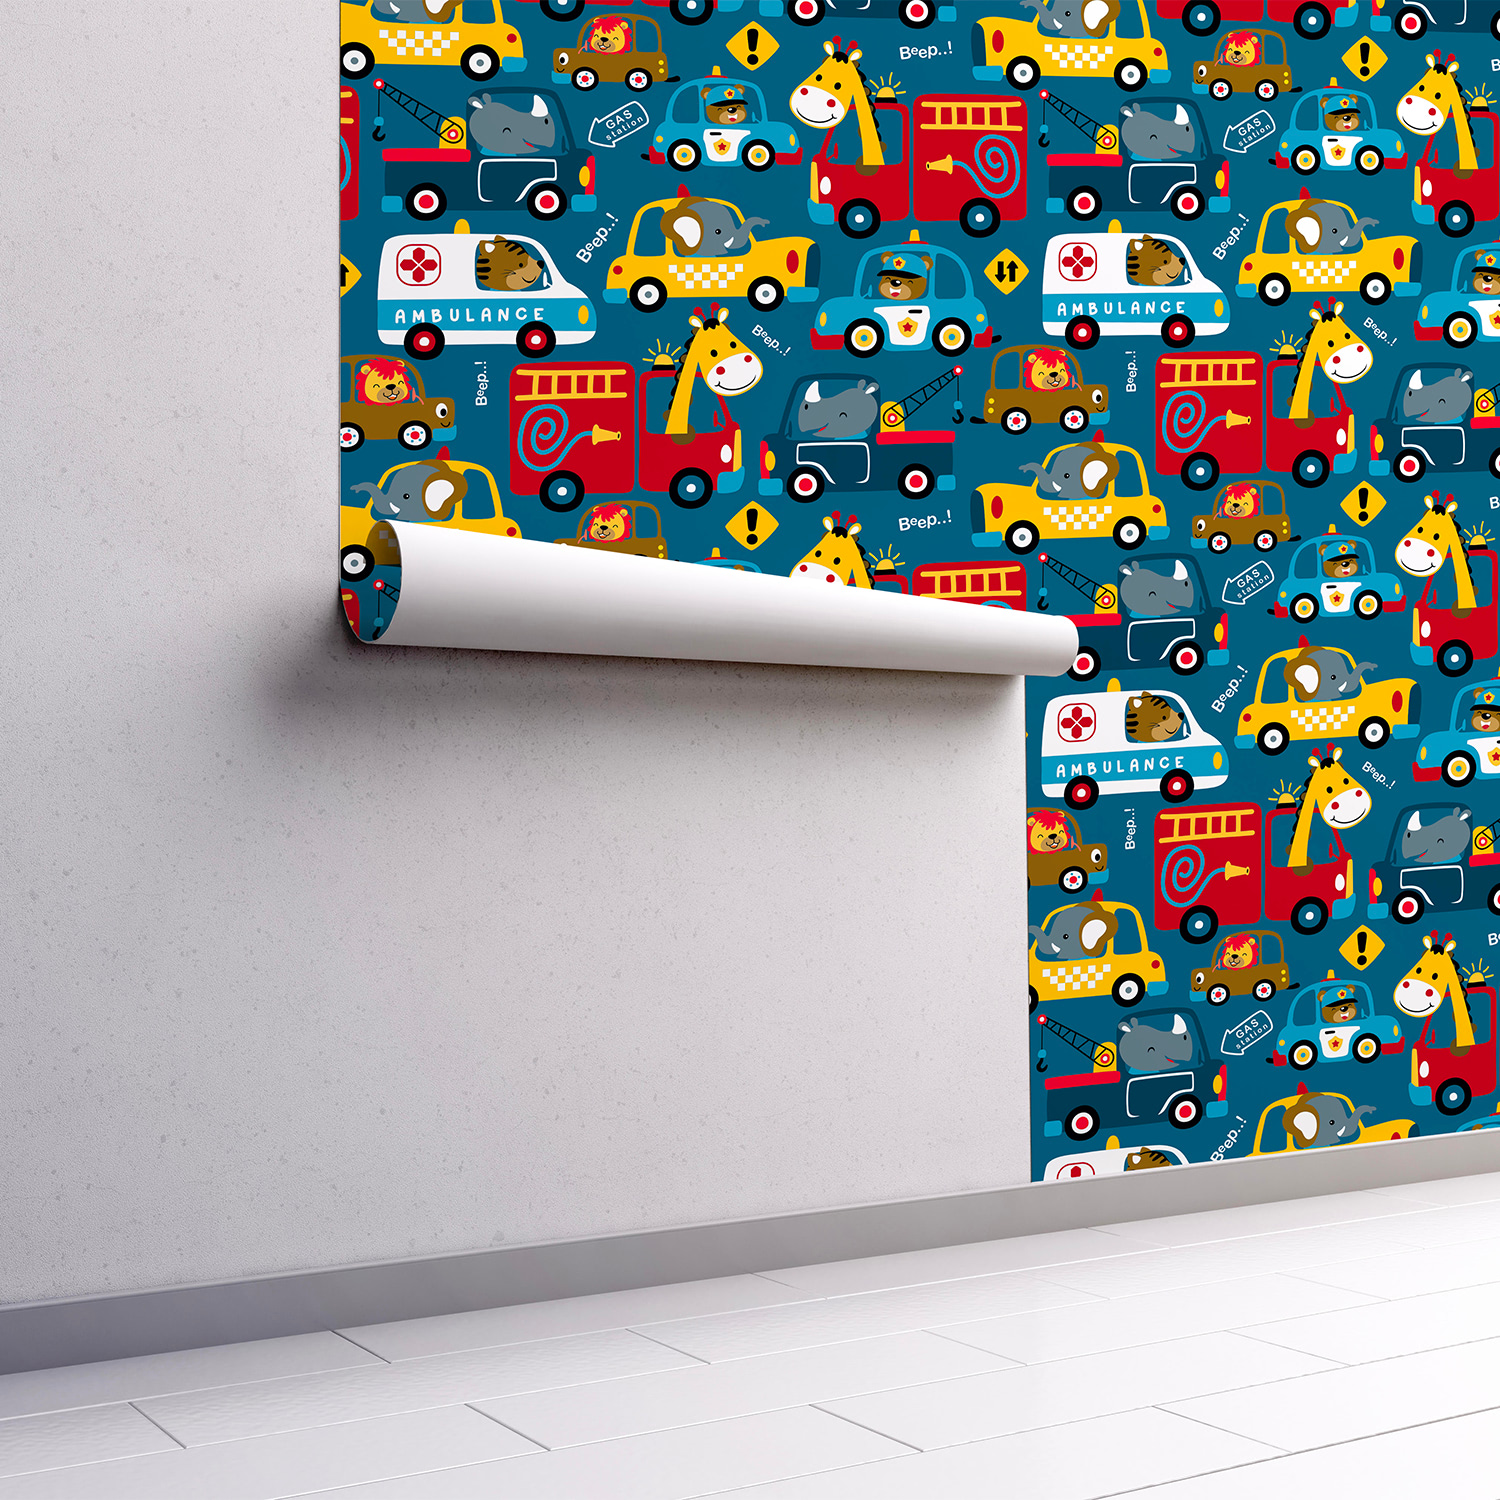 PP71-mur.rouleau-papier-peint-adhesif-decoratif-revetement-vinyle-motifs-les-animaux-sur-la-route-renovation-meuble-mur